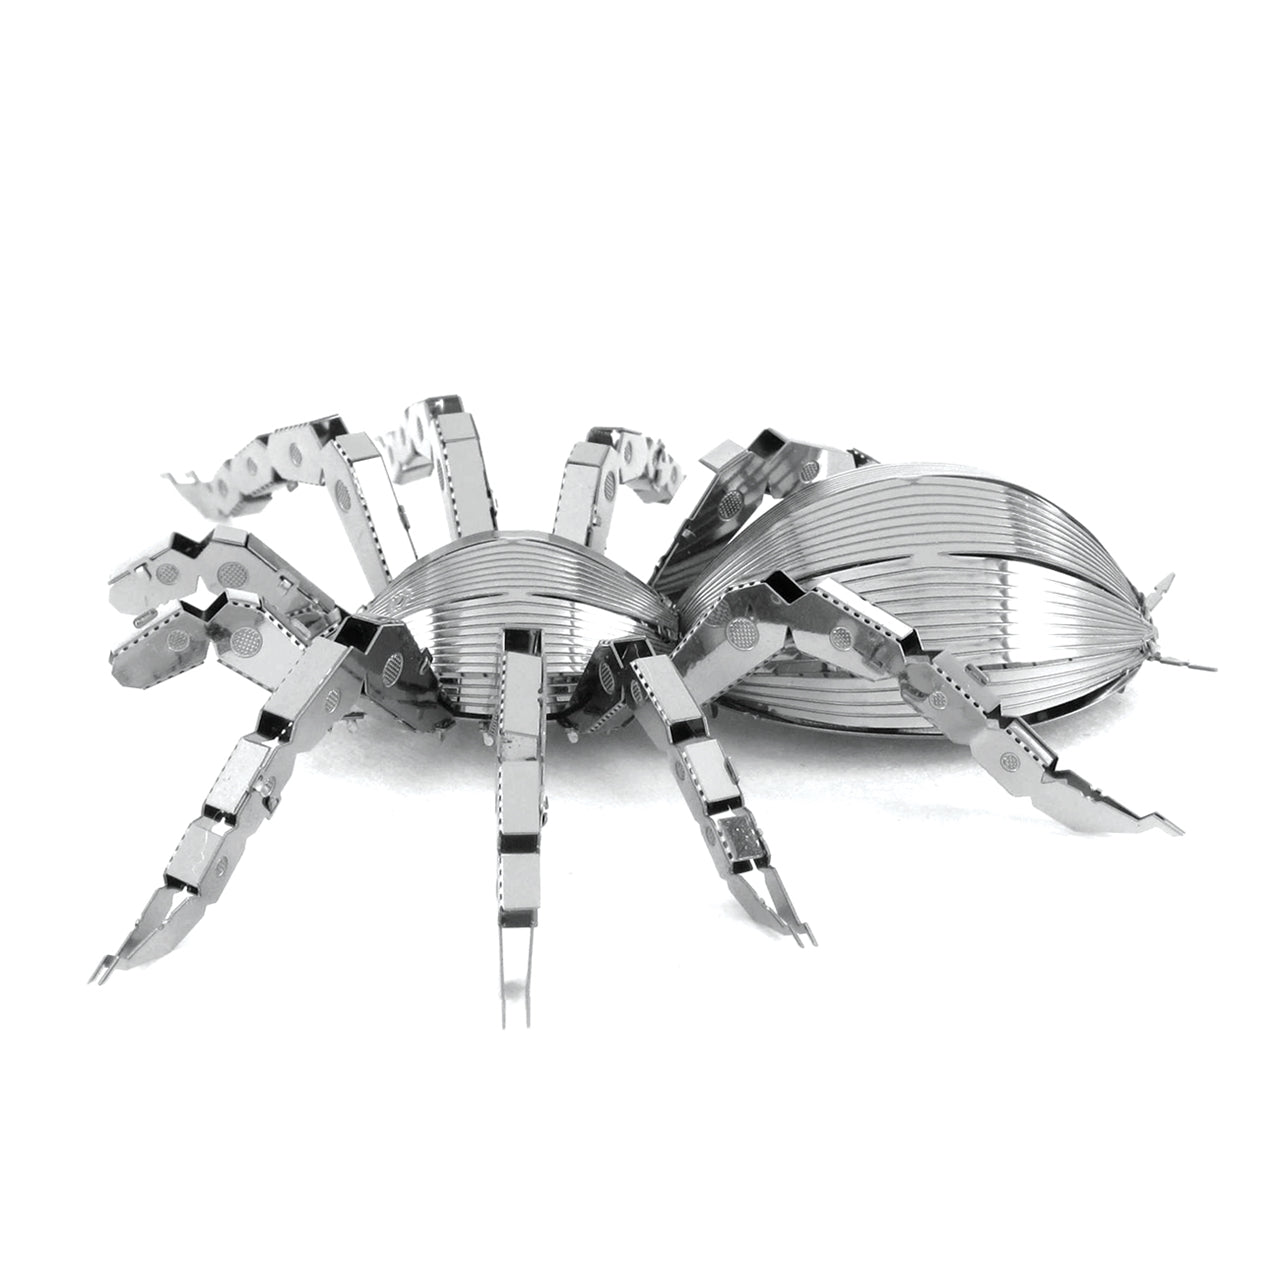 Tarantula 3D Steel Model Kit Metal Earth